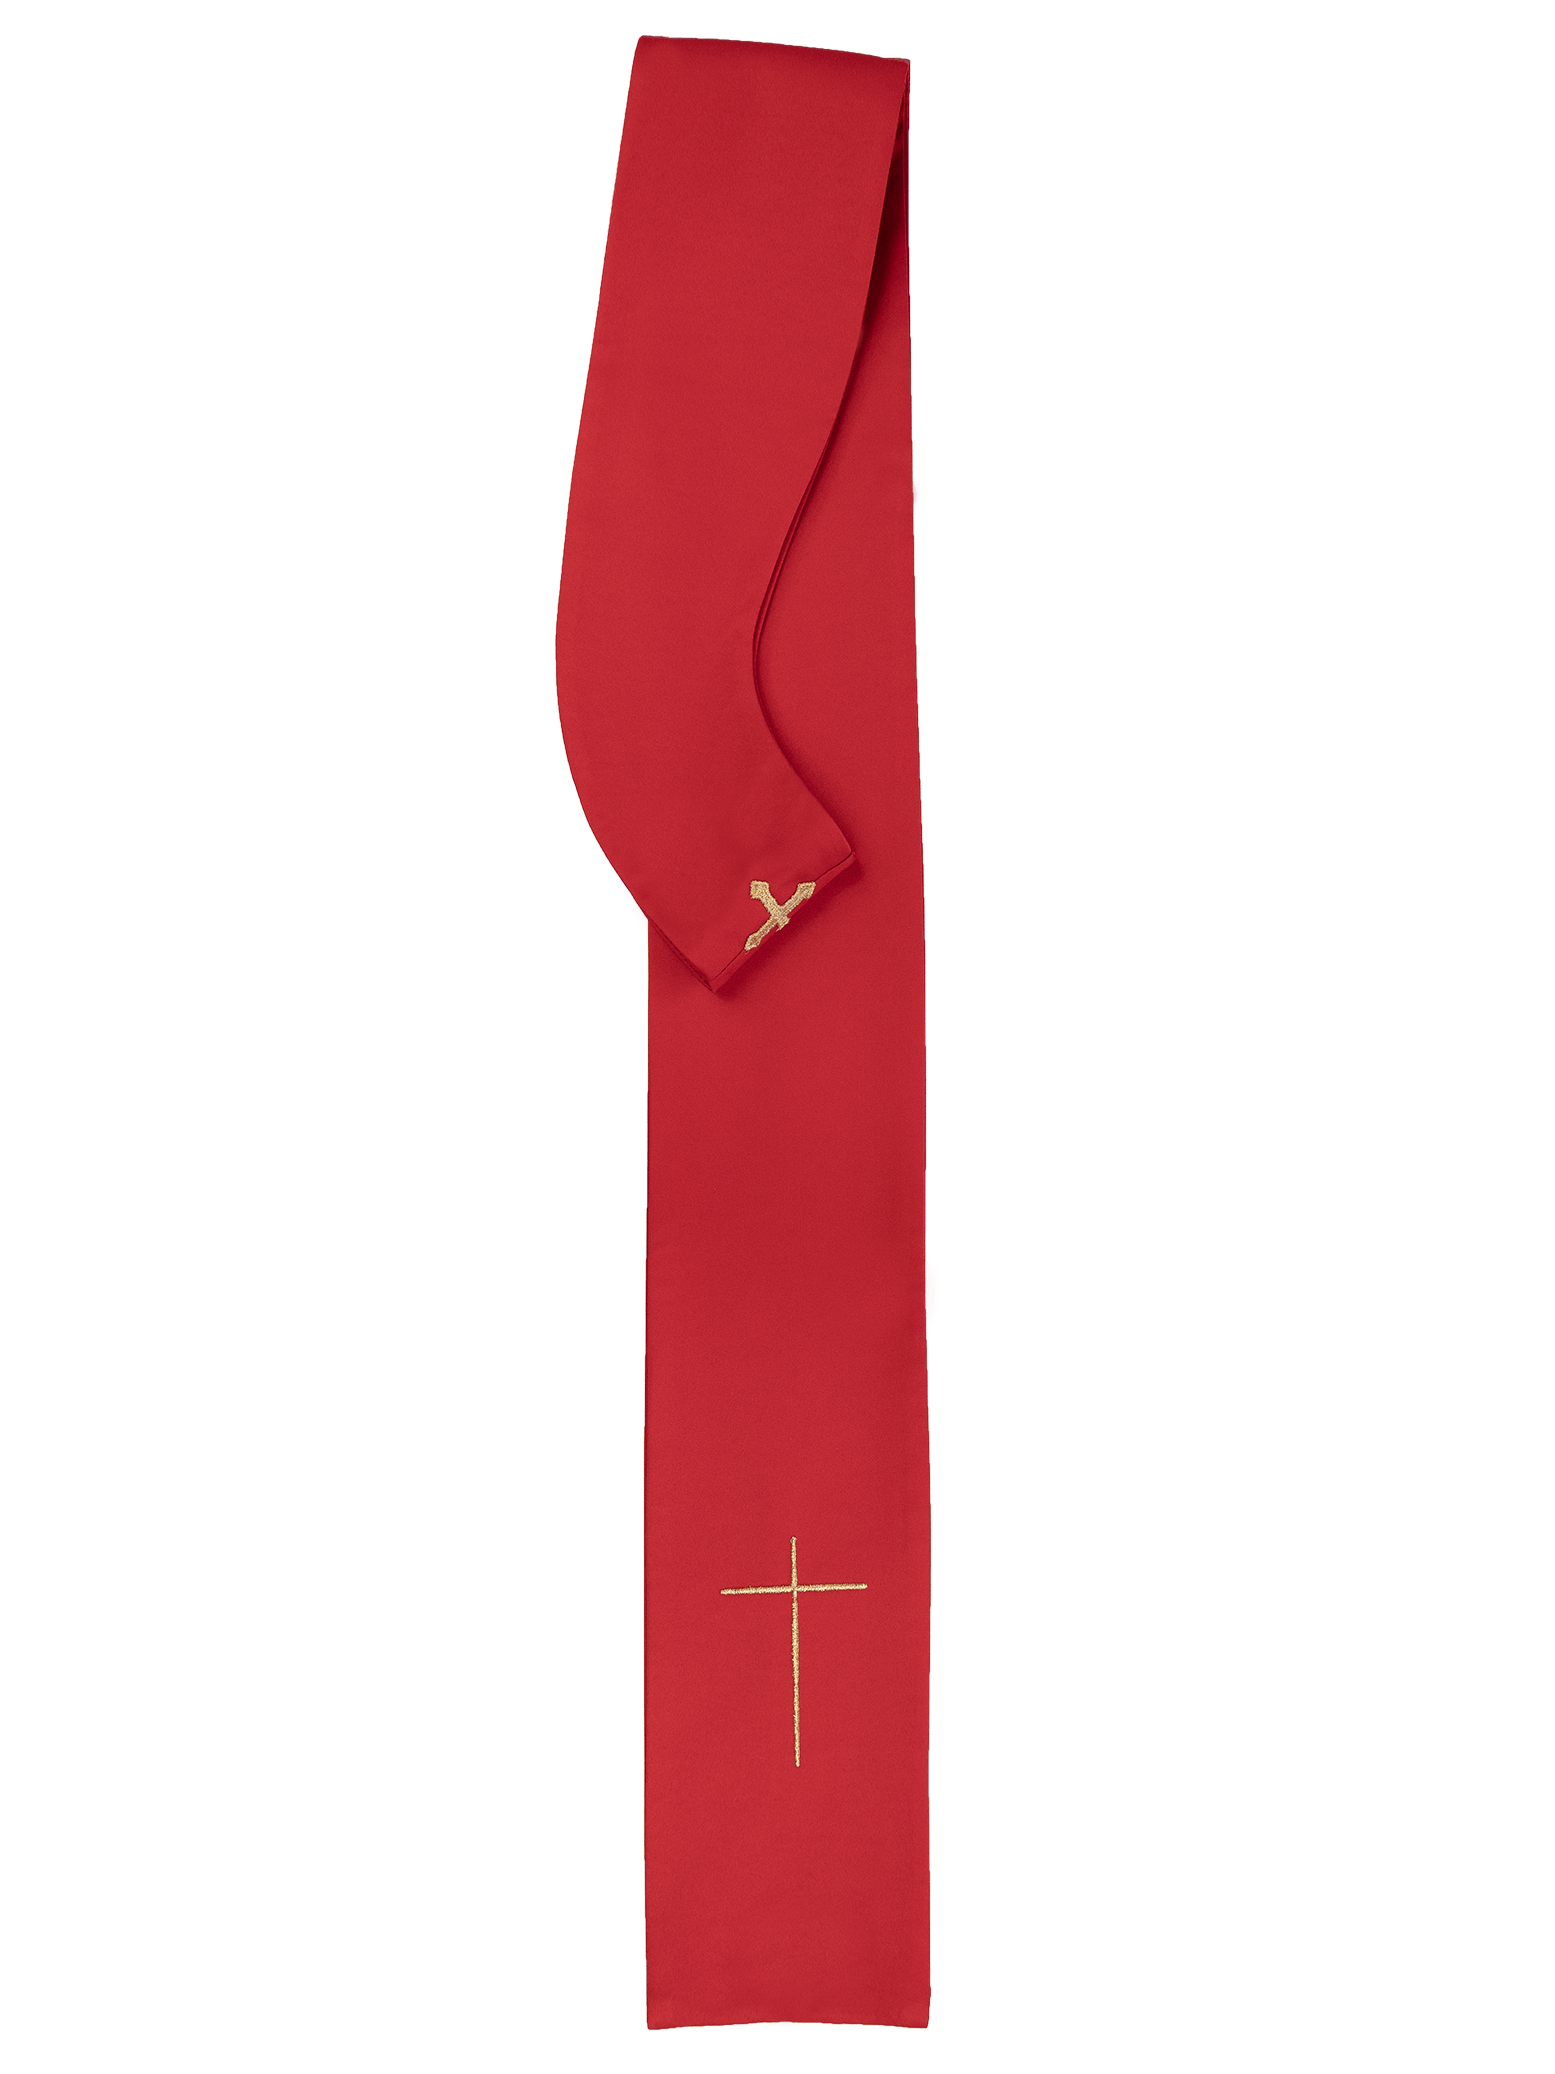 Ornat haftowany z symbolami IHS i PAX KOR/119 Czerwony - ORNATY.PL